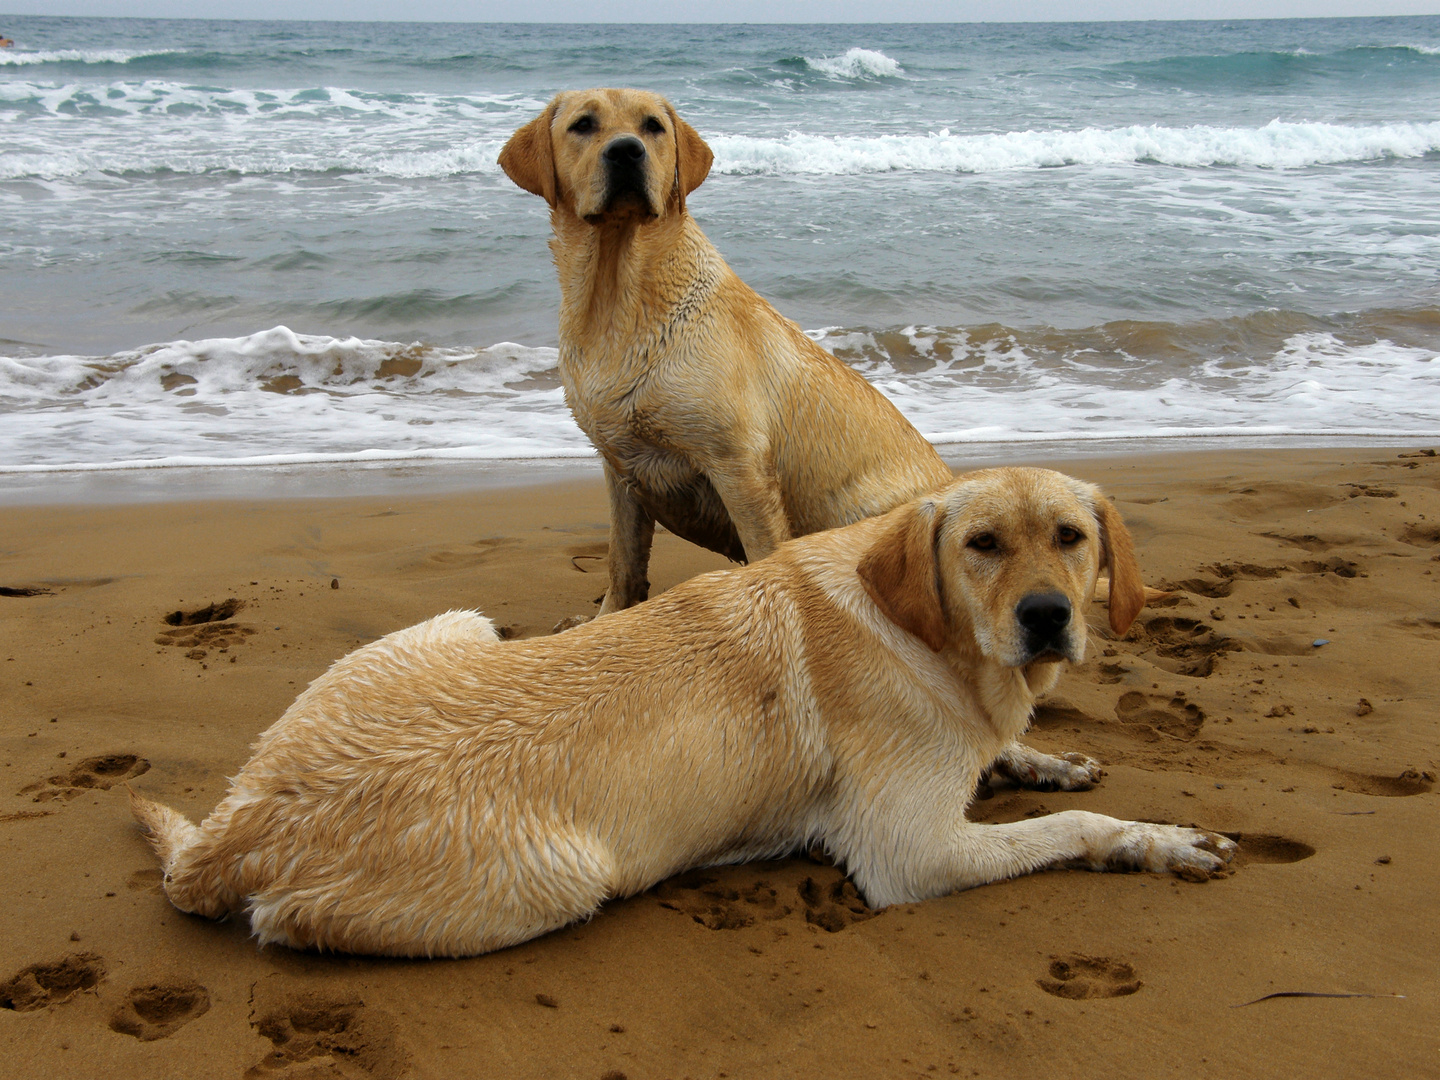 Perros en la playa